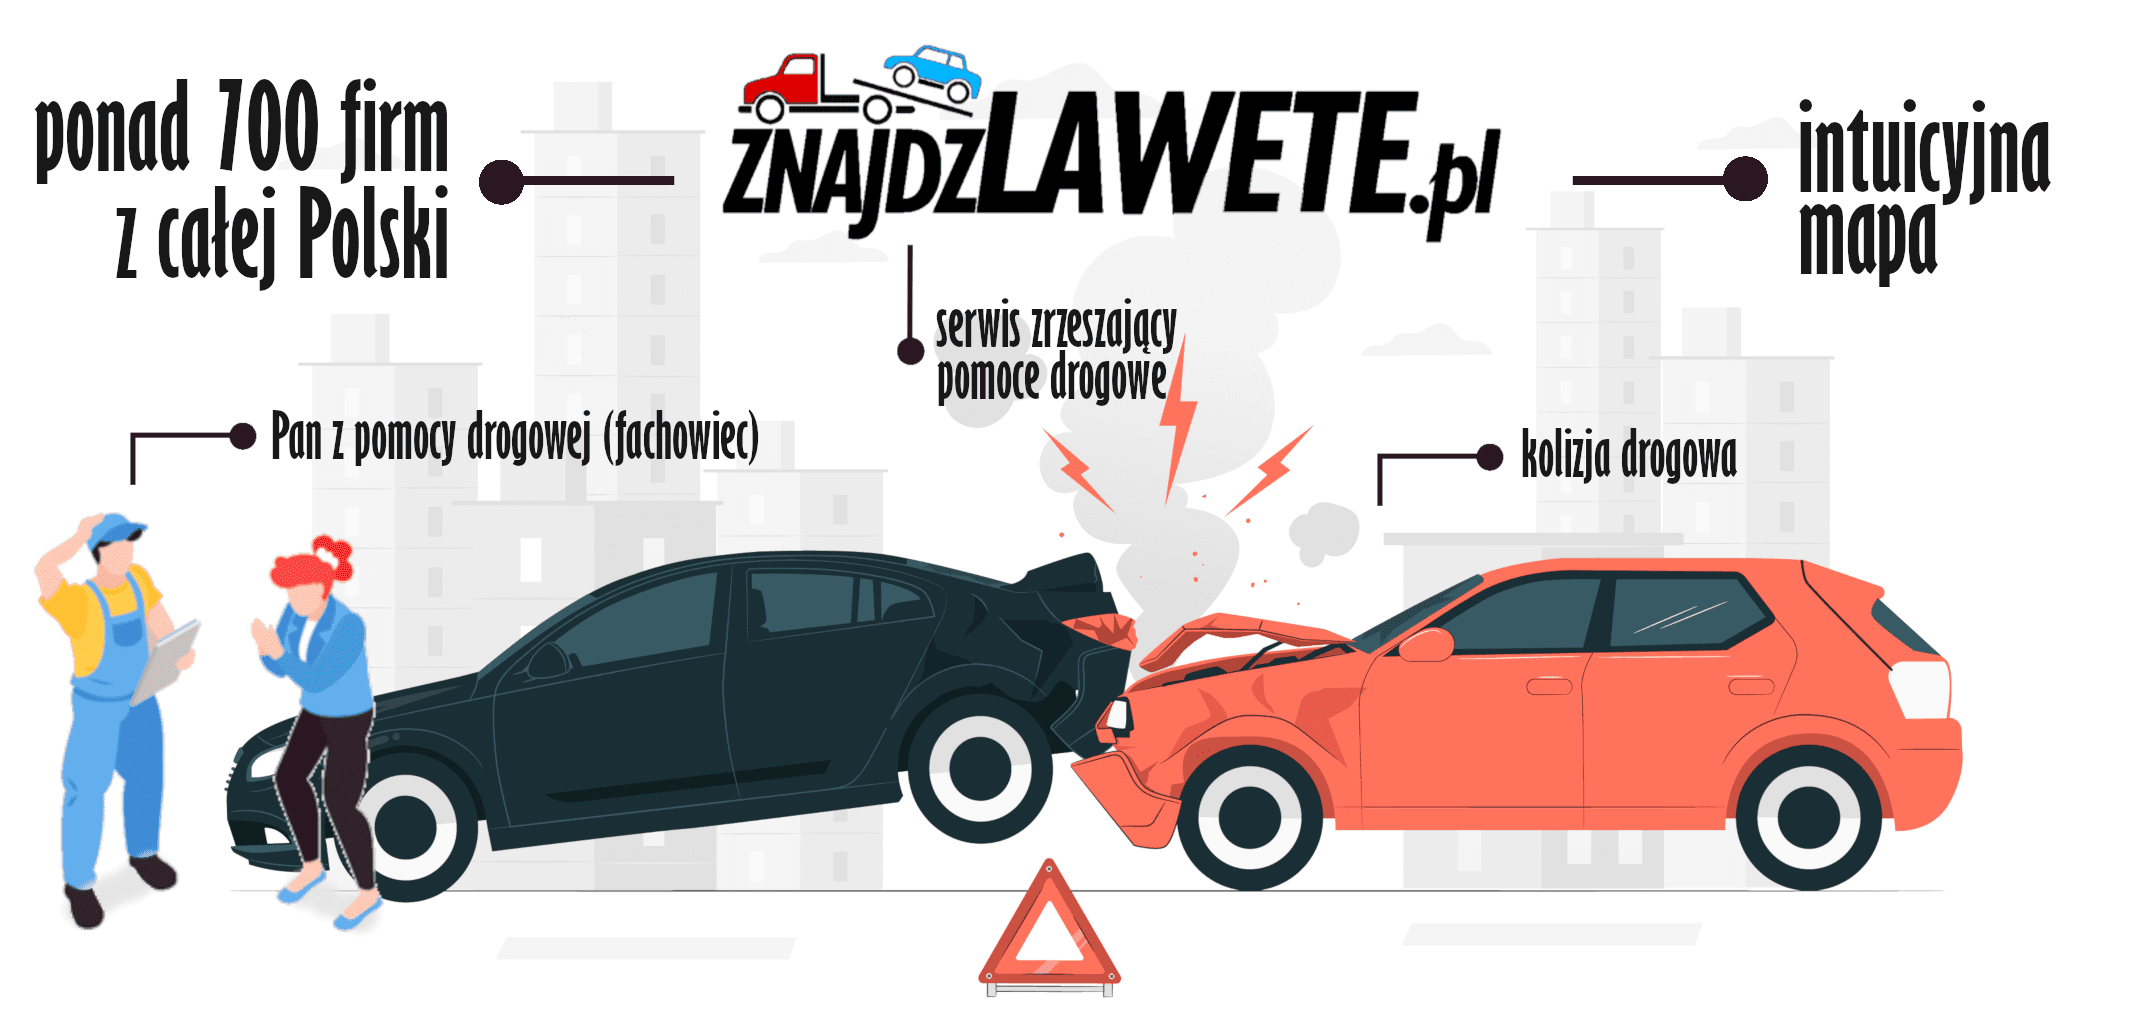 Pomoc drogowa w całej Polsce - znajdzlawete.pl